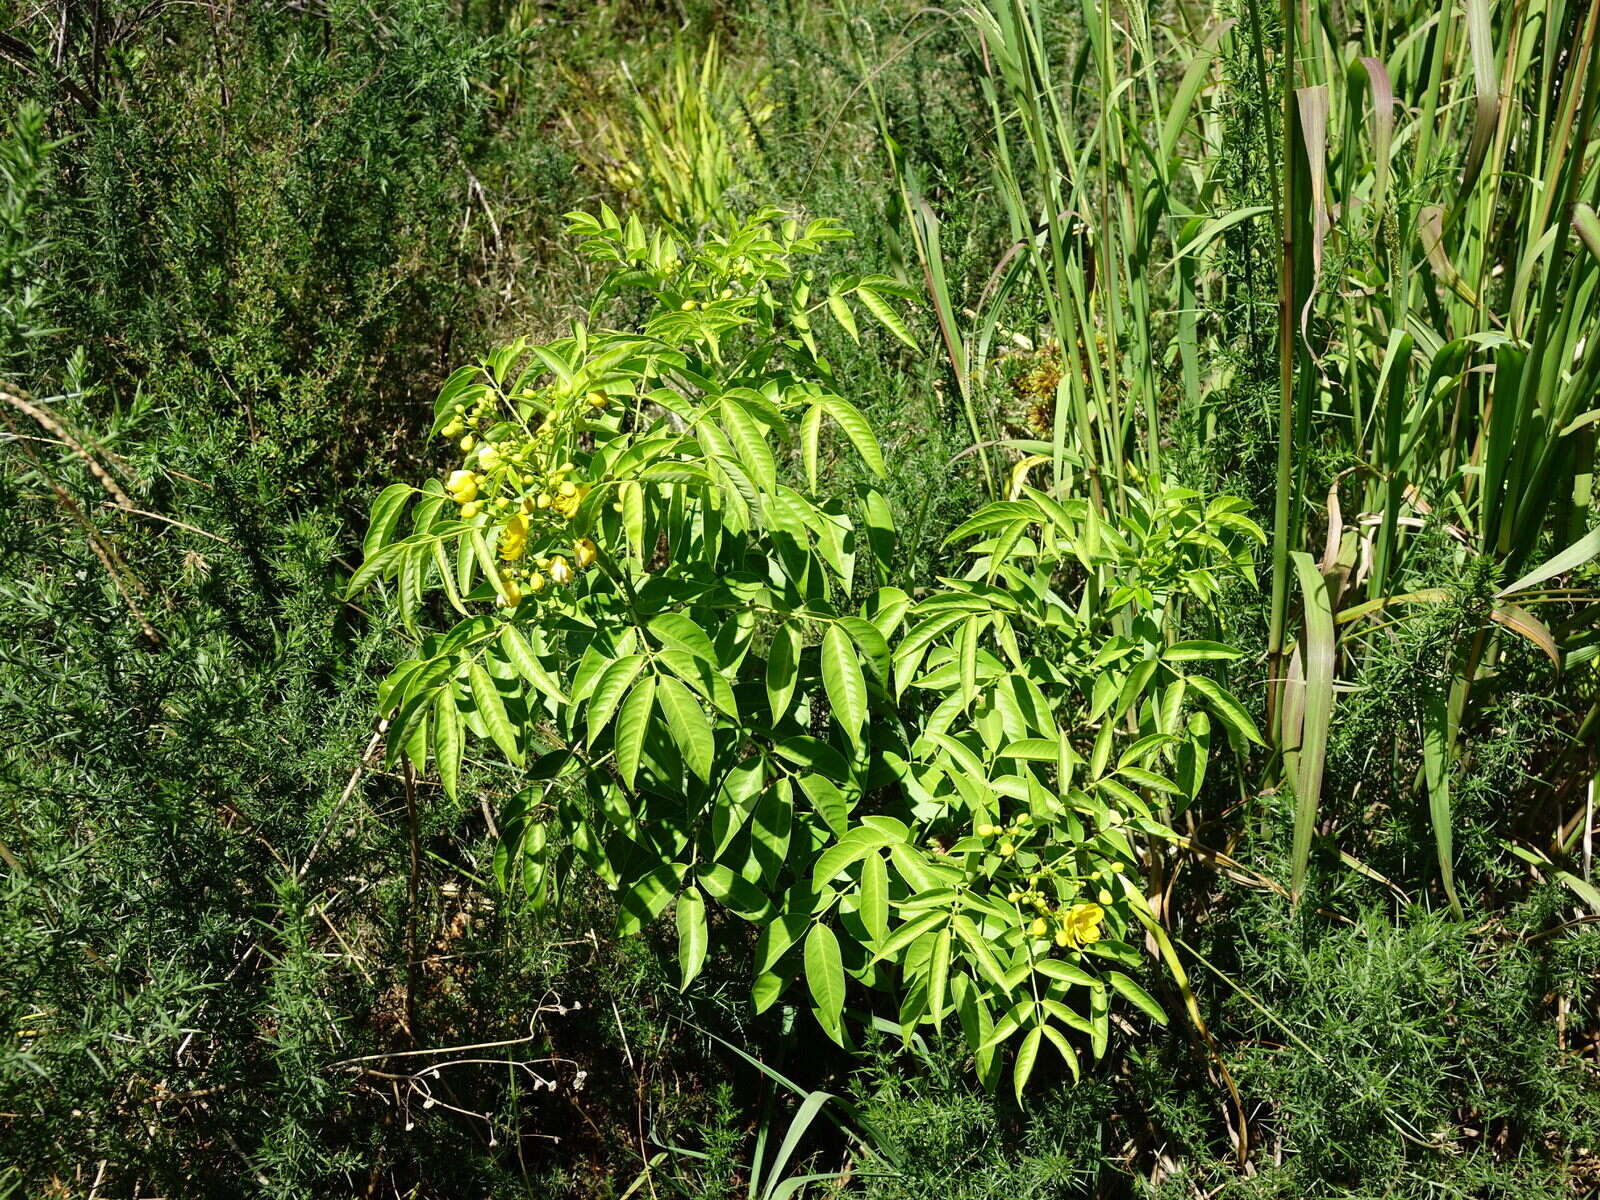 Image of arsenic bush